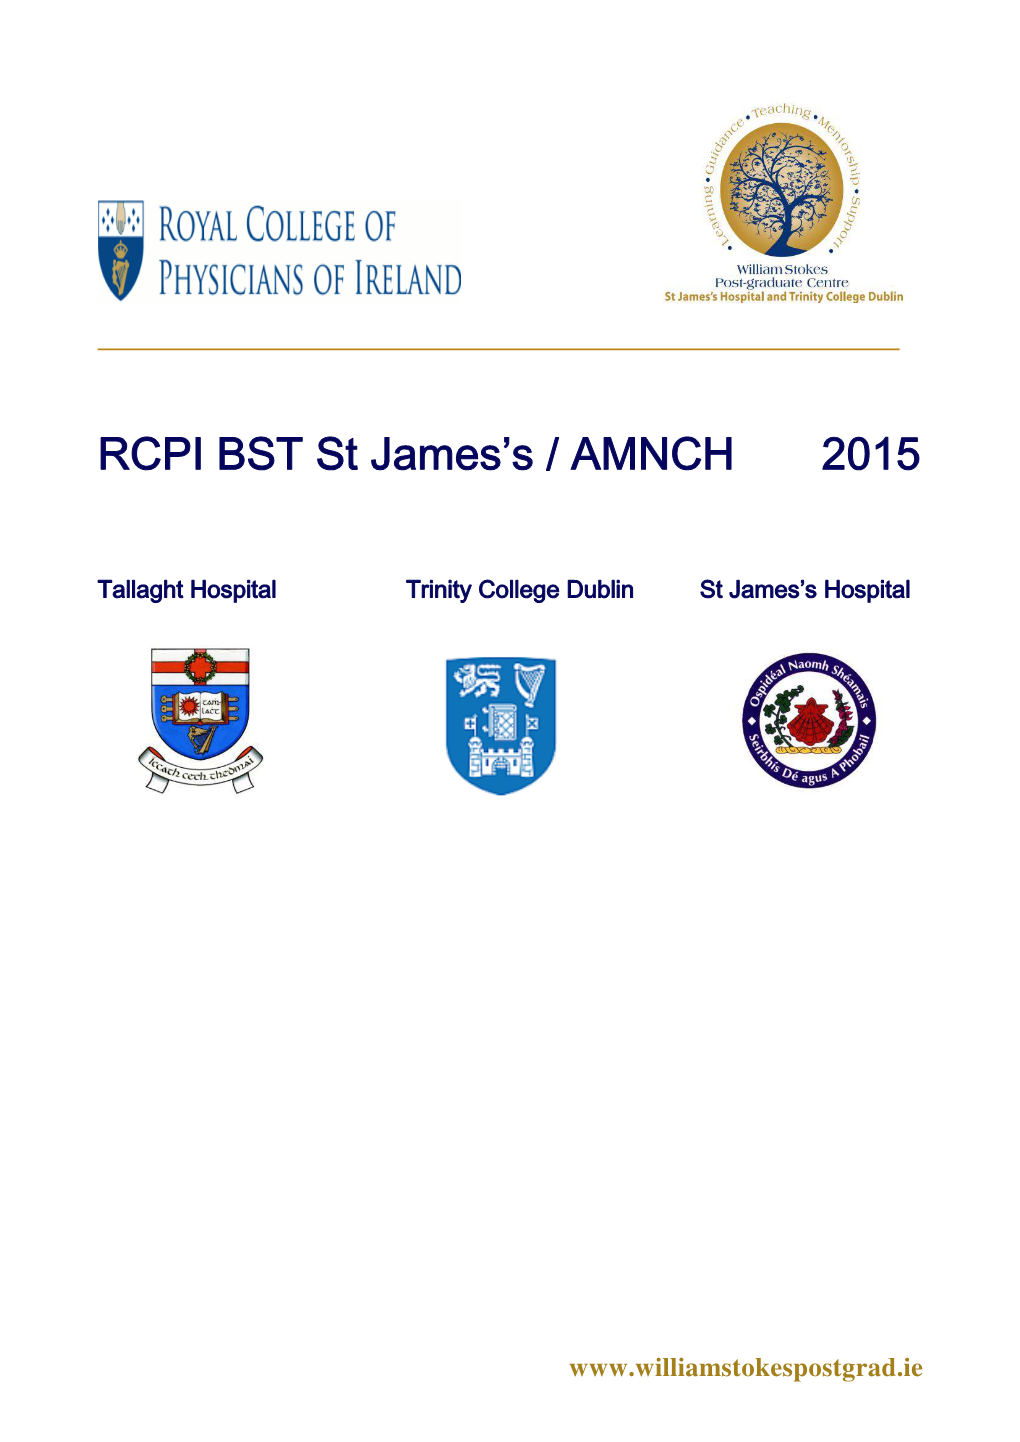 RCPI BST St James's / AMNCH 2015